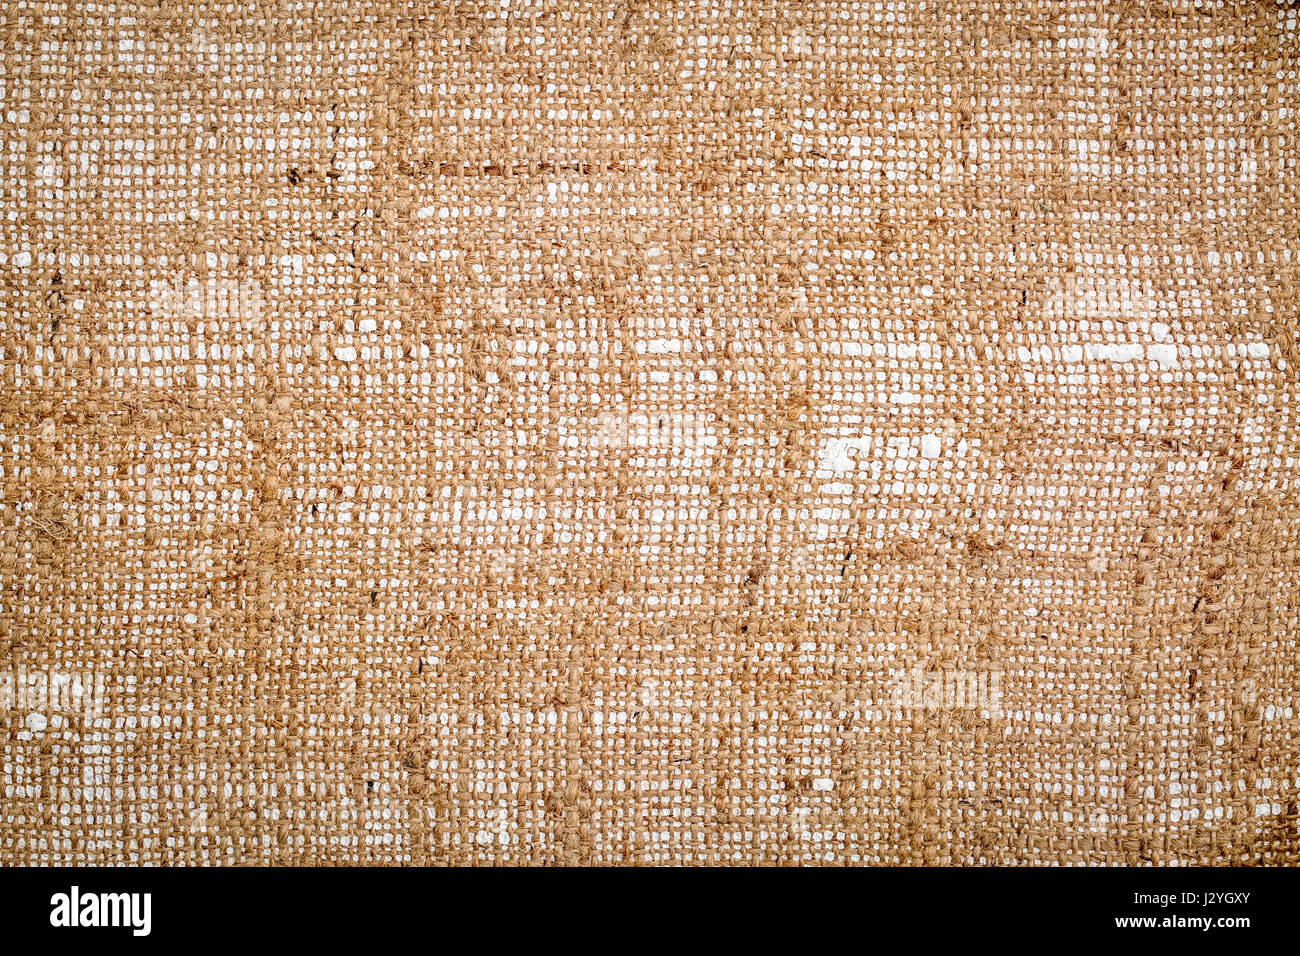 Leinwand Leinwand Hintergrund (Unterseite des grundiert und gespannte  Leinwand Stockfotografie - Alamy